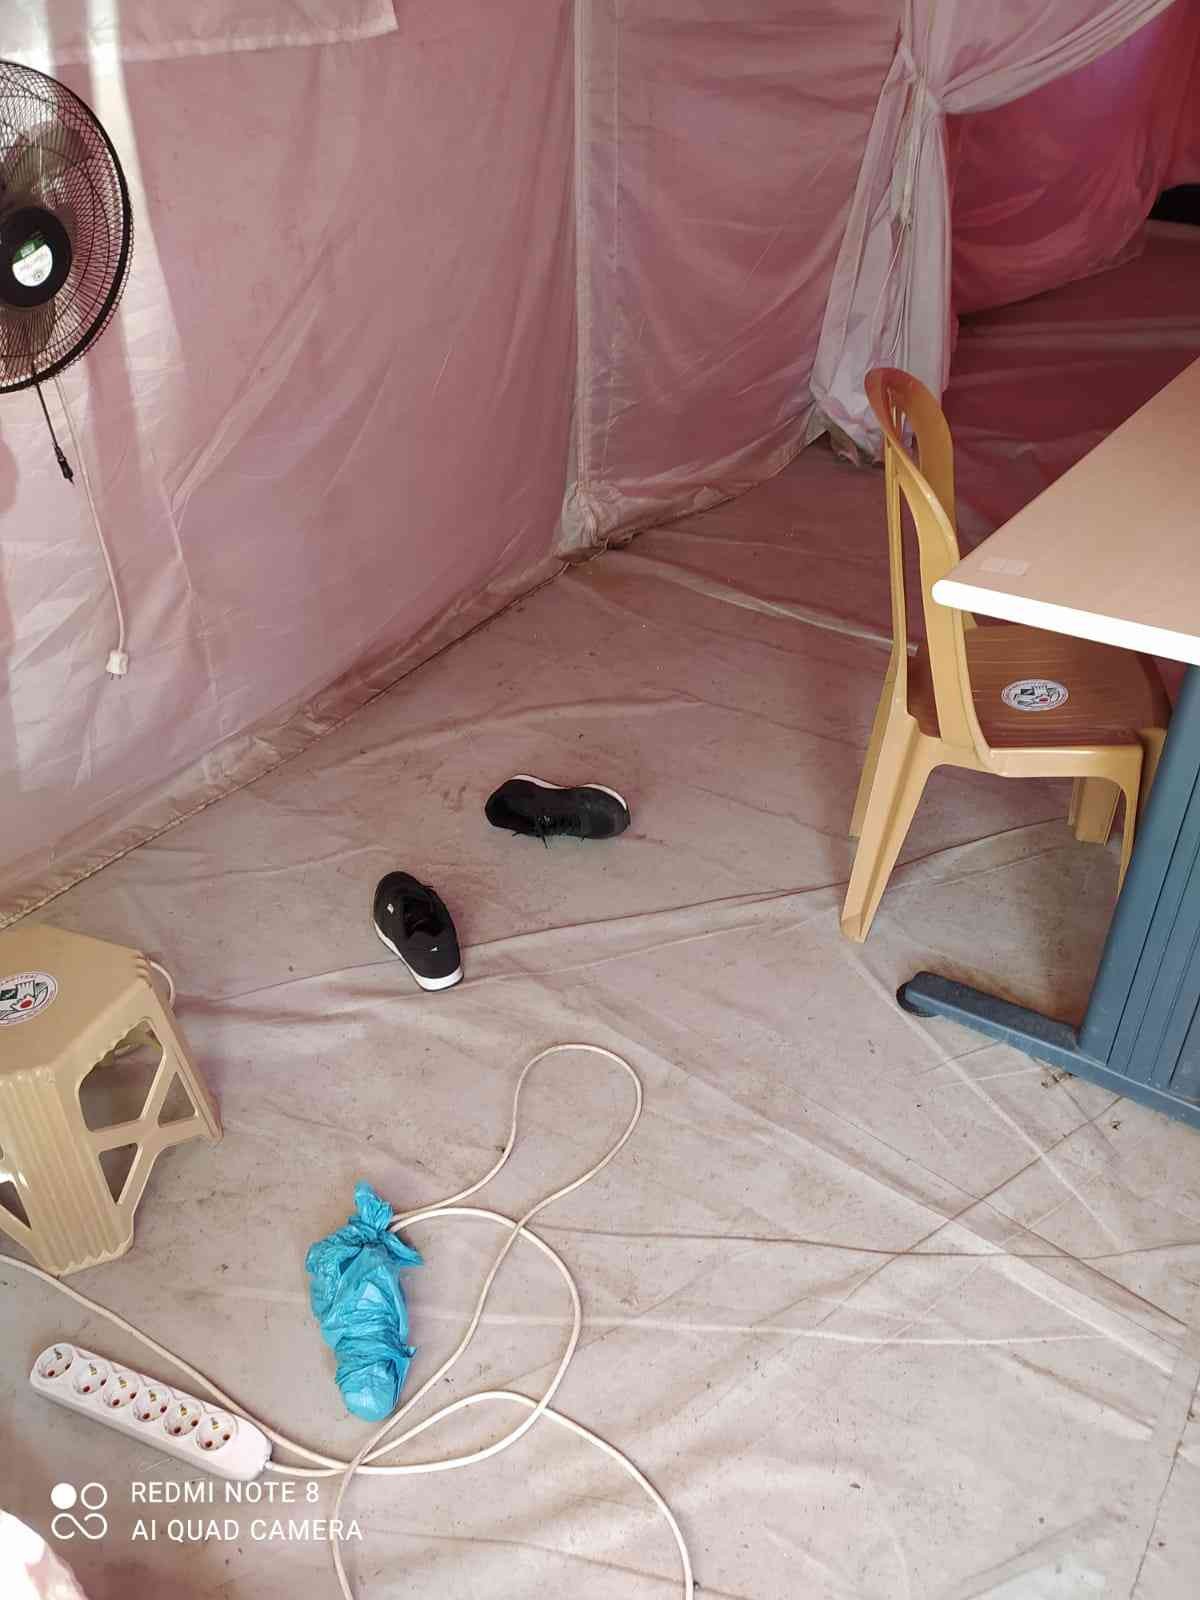 Giresun’daki aşı çadırına zarar verildi #giresun